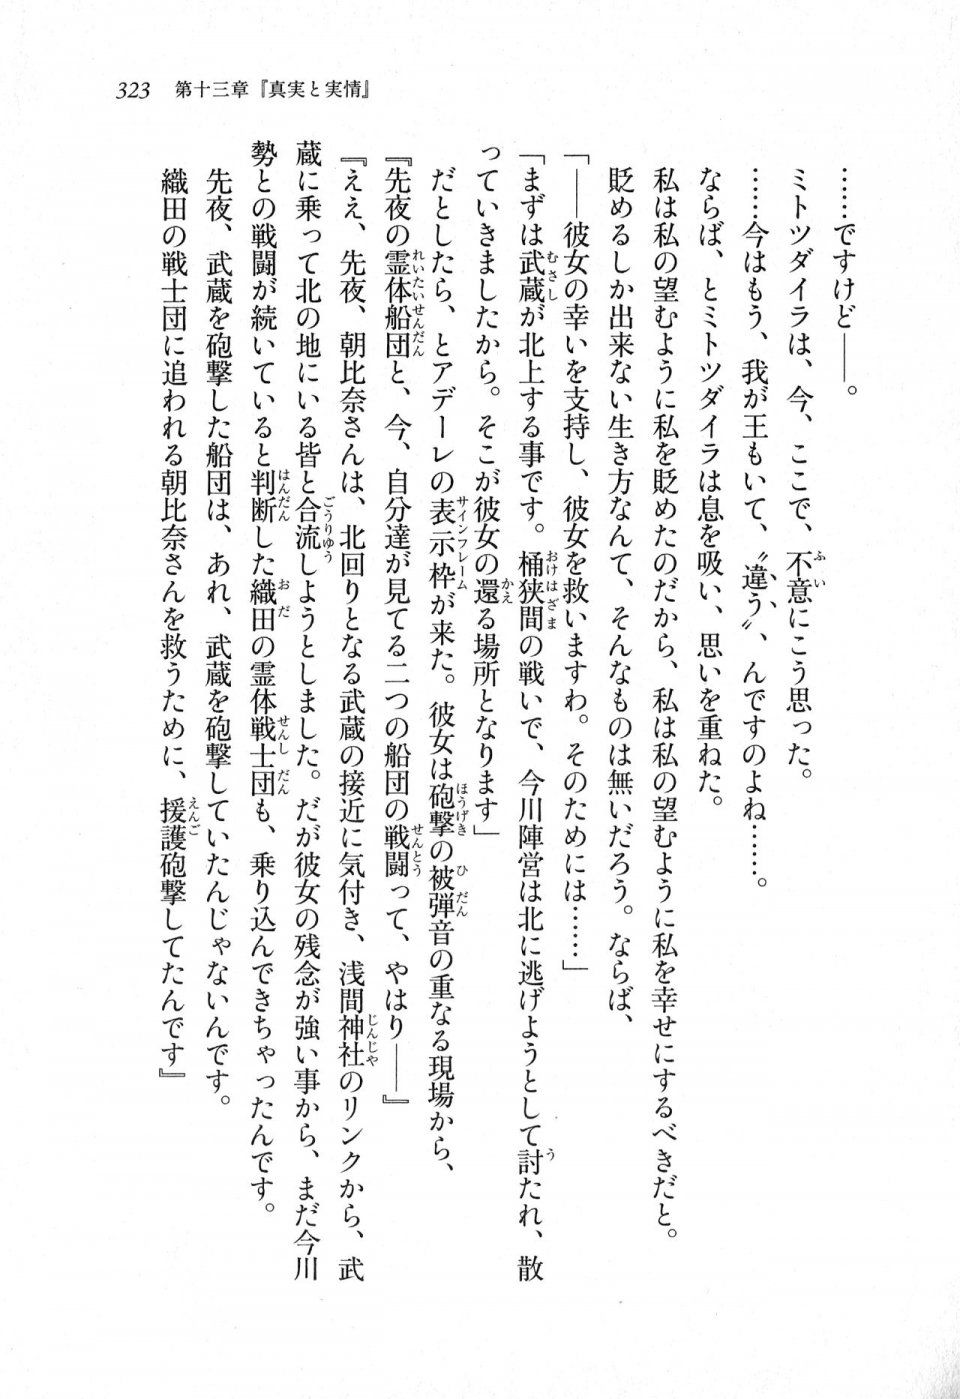 Kyoukai Senjou no Horizon LN Sidestory Vol 1 - Photo #321